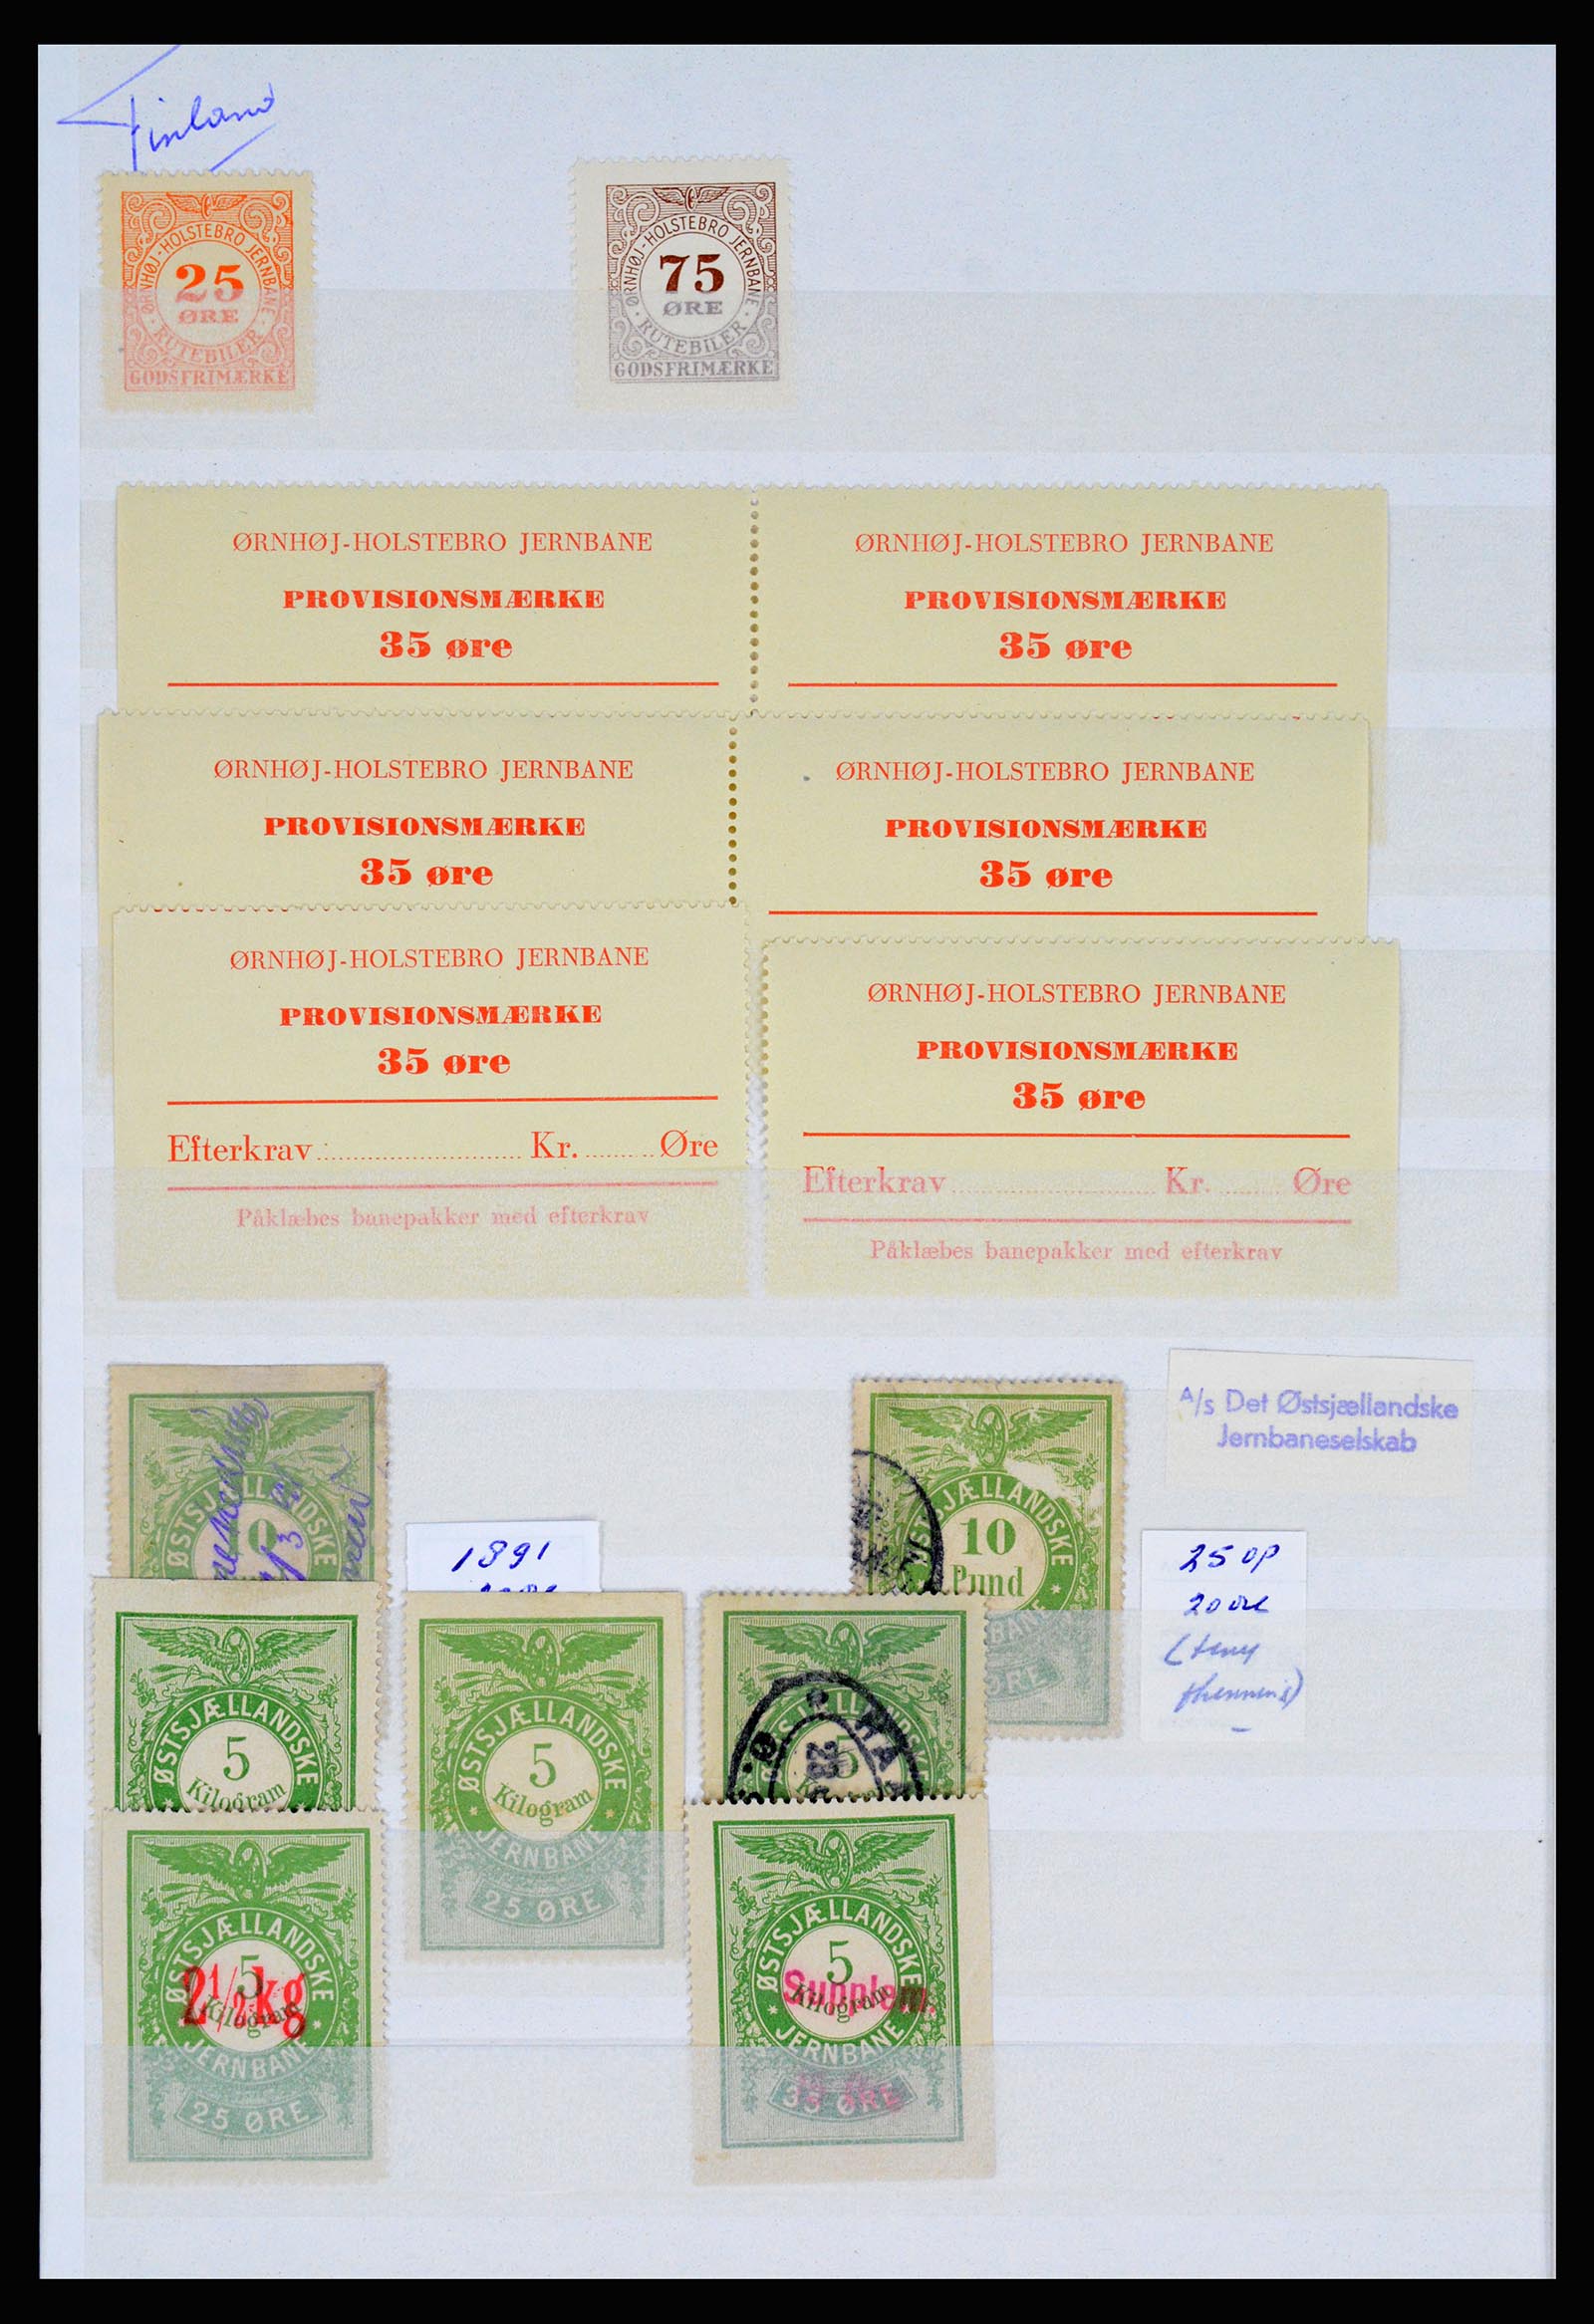 36982 111 - Postzegelverzameling 36982 Denemarken spoorwegzegels.